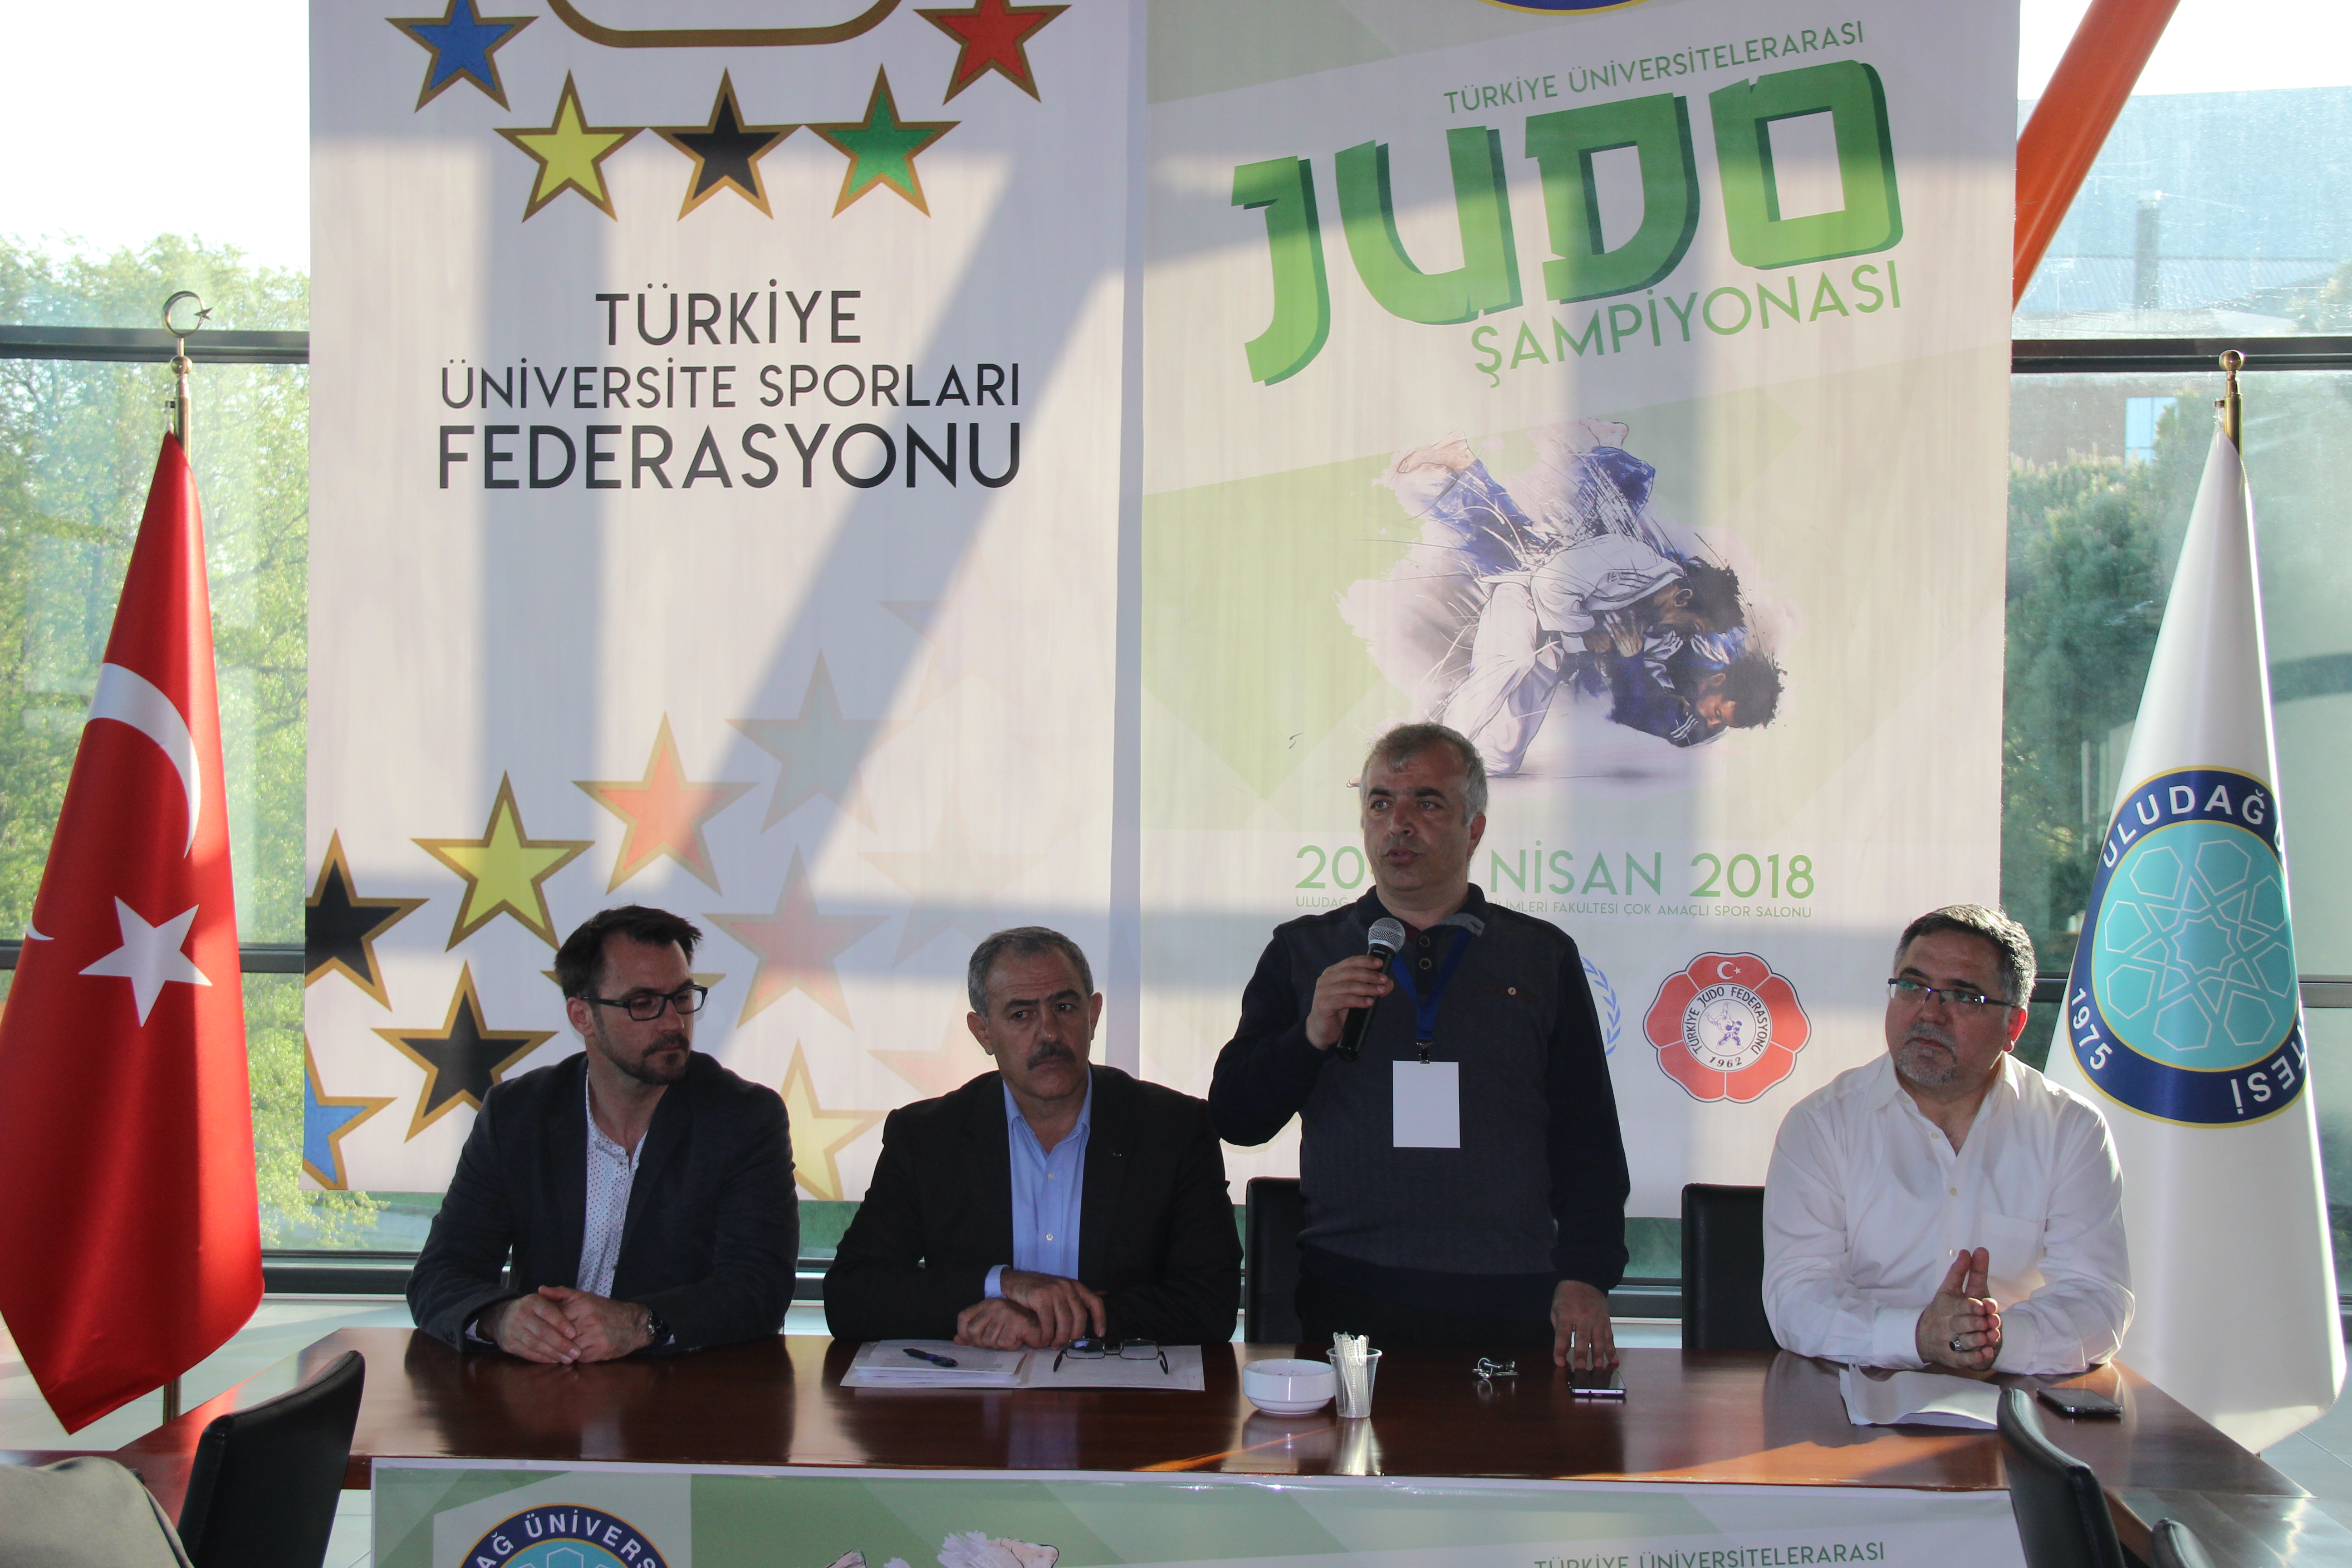  Üniversitelerarası Türkiye Judo Şampiyonası Uludağ Üniversitesi’nde Başladı 